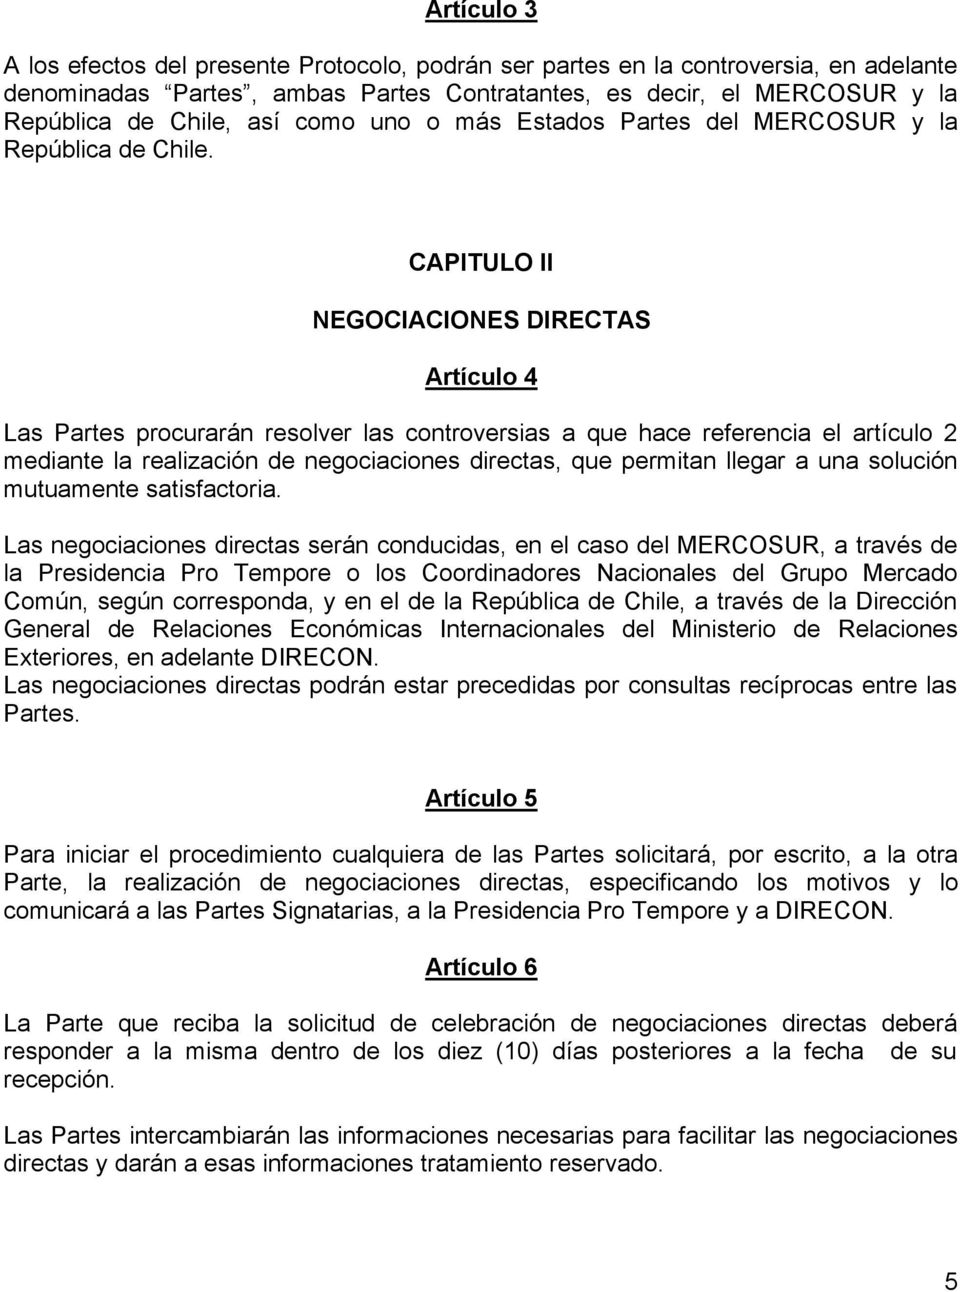 CAPITULO II NEGOCIACIONES DIRECTAS Artículo 4 Las Partes procurarán resolver las controversias a que hace referencia el artículo 2 mediante la realización de negociaciones directas, que permitan